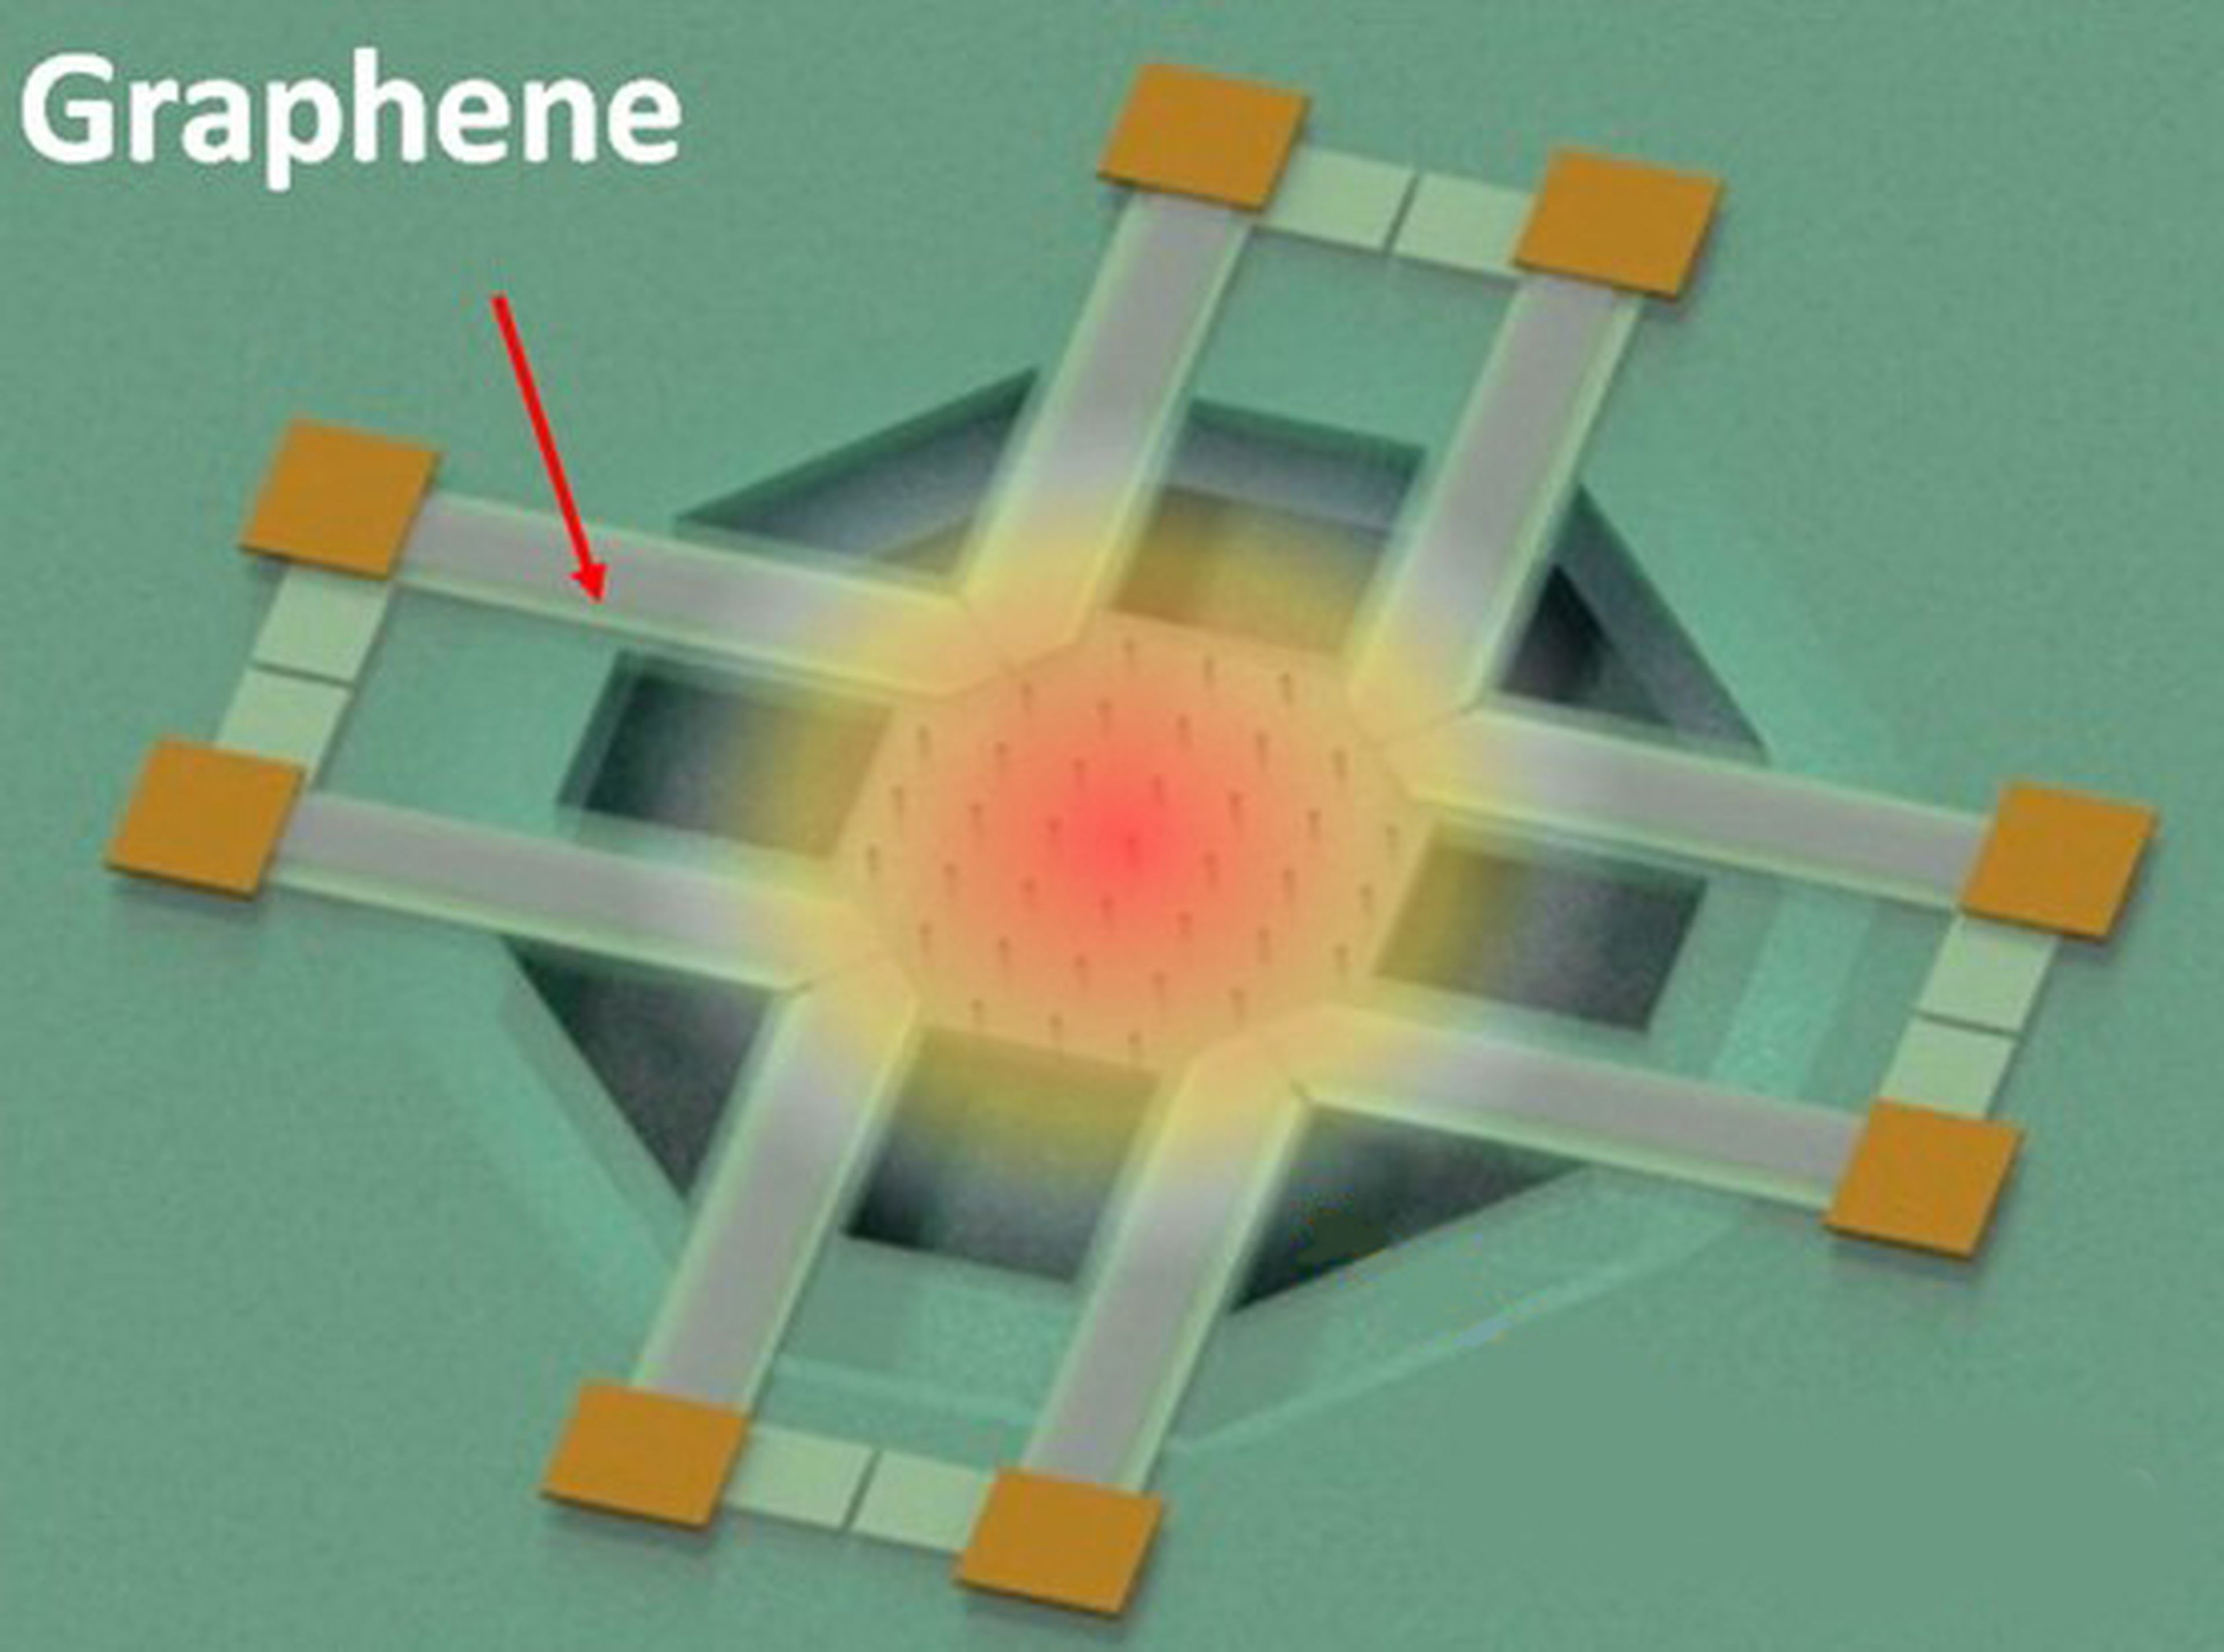 Un sensor de grafeno optimiza la visión térmica e infrarroja